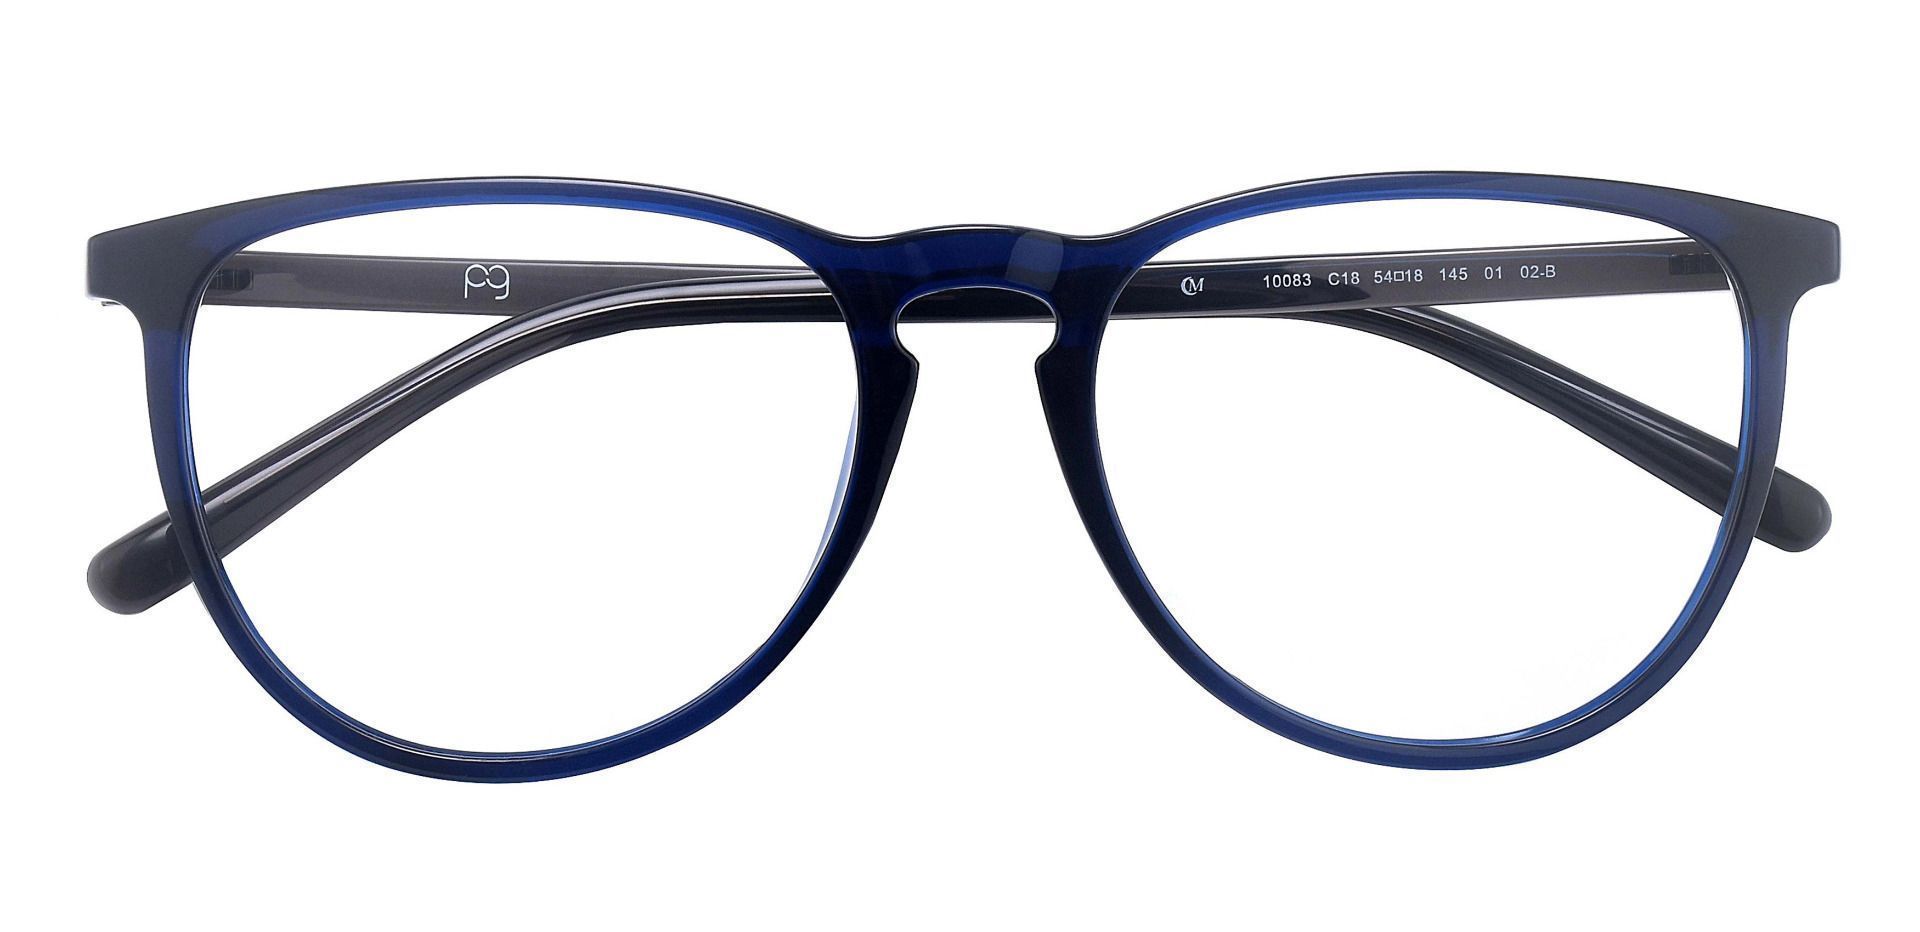 Rader Oval Non-Rx Glasses - Blue